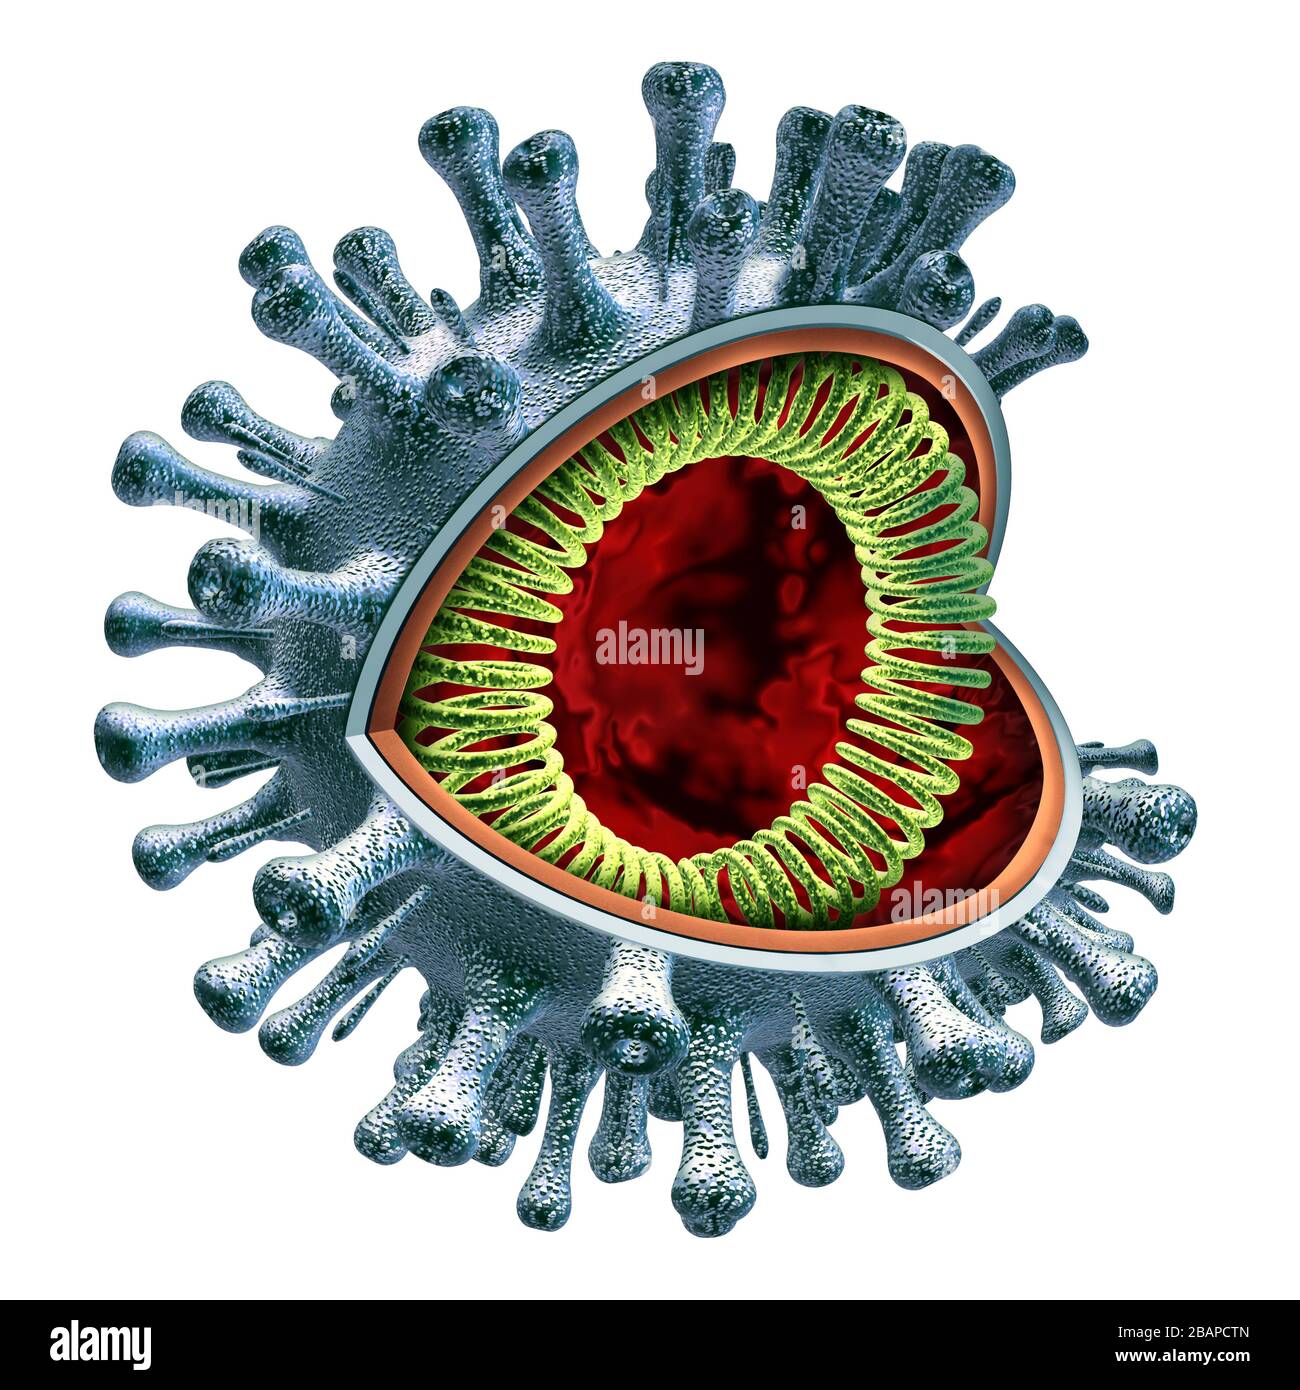 Coronavirus-Zellanatomie-Konzept als kovid-19-Virus-Querschnitt konzeptionelles anatomisches Diagramm mit RNA-Strang als ansteckender Erreger. Stockfoto